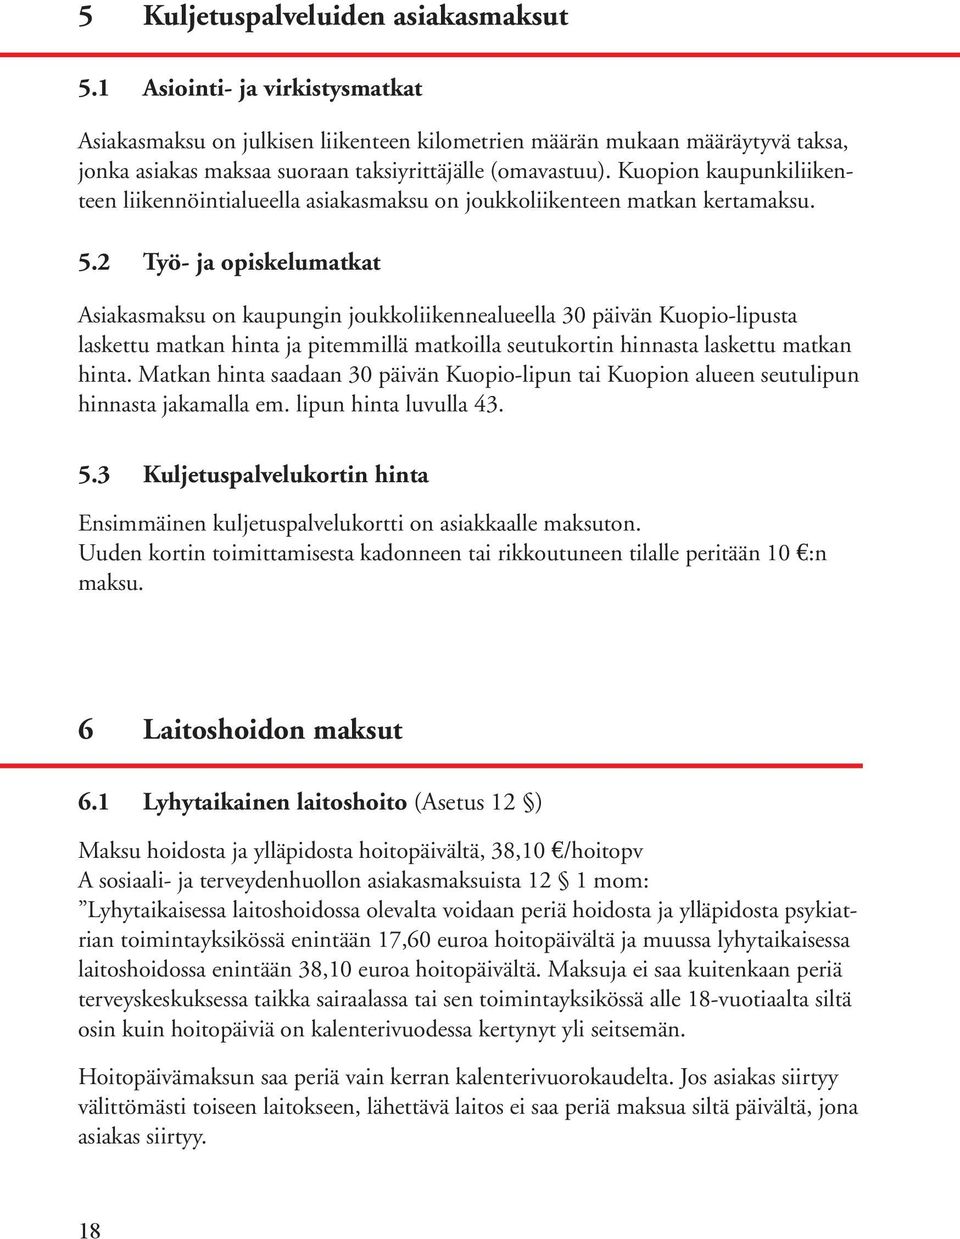 Kuopion kaupunkiliikenteen liikennöintialueella asiakasmaksu on joukkoliikenteen matkan kertamaksu. 5.